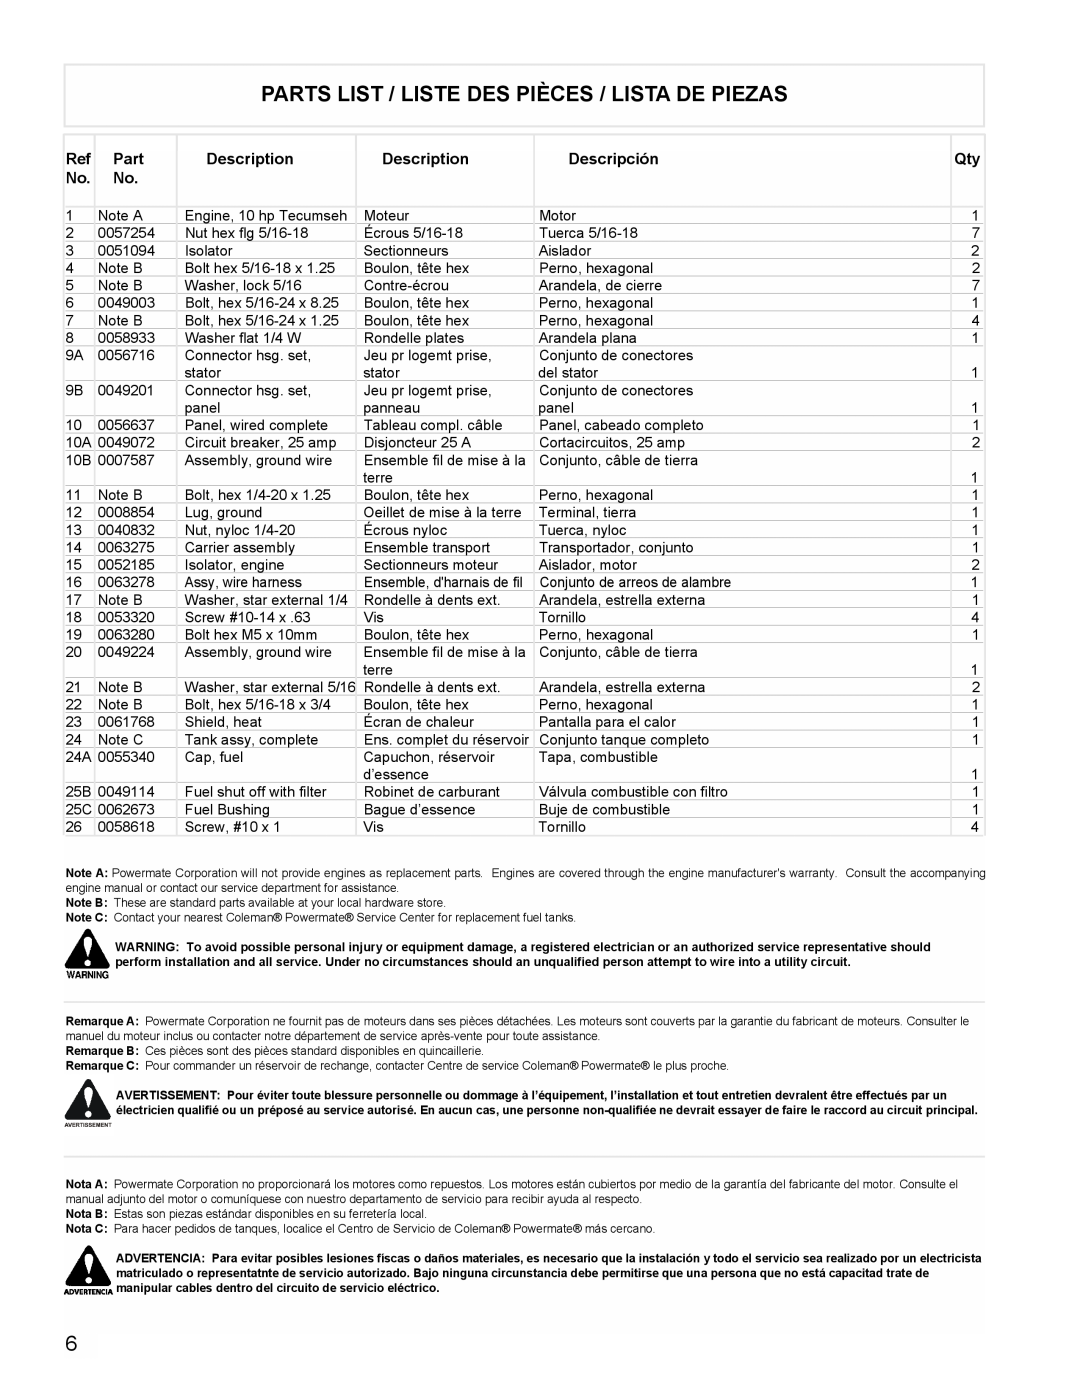 Powermate PMA525302.01 manual Parts List / Liste Des Pièces / Lista De Piezas, Description, Descripción 